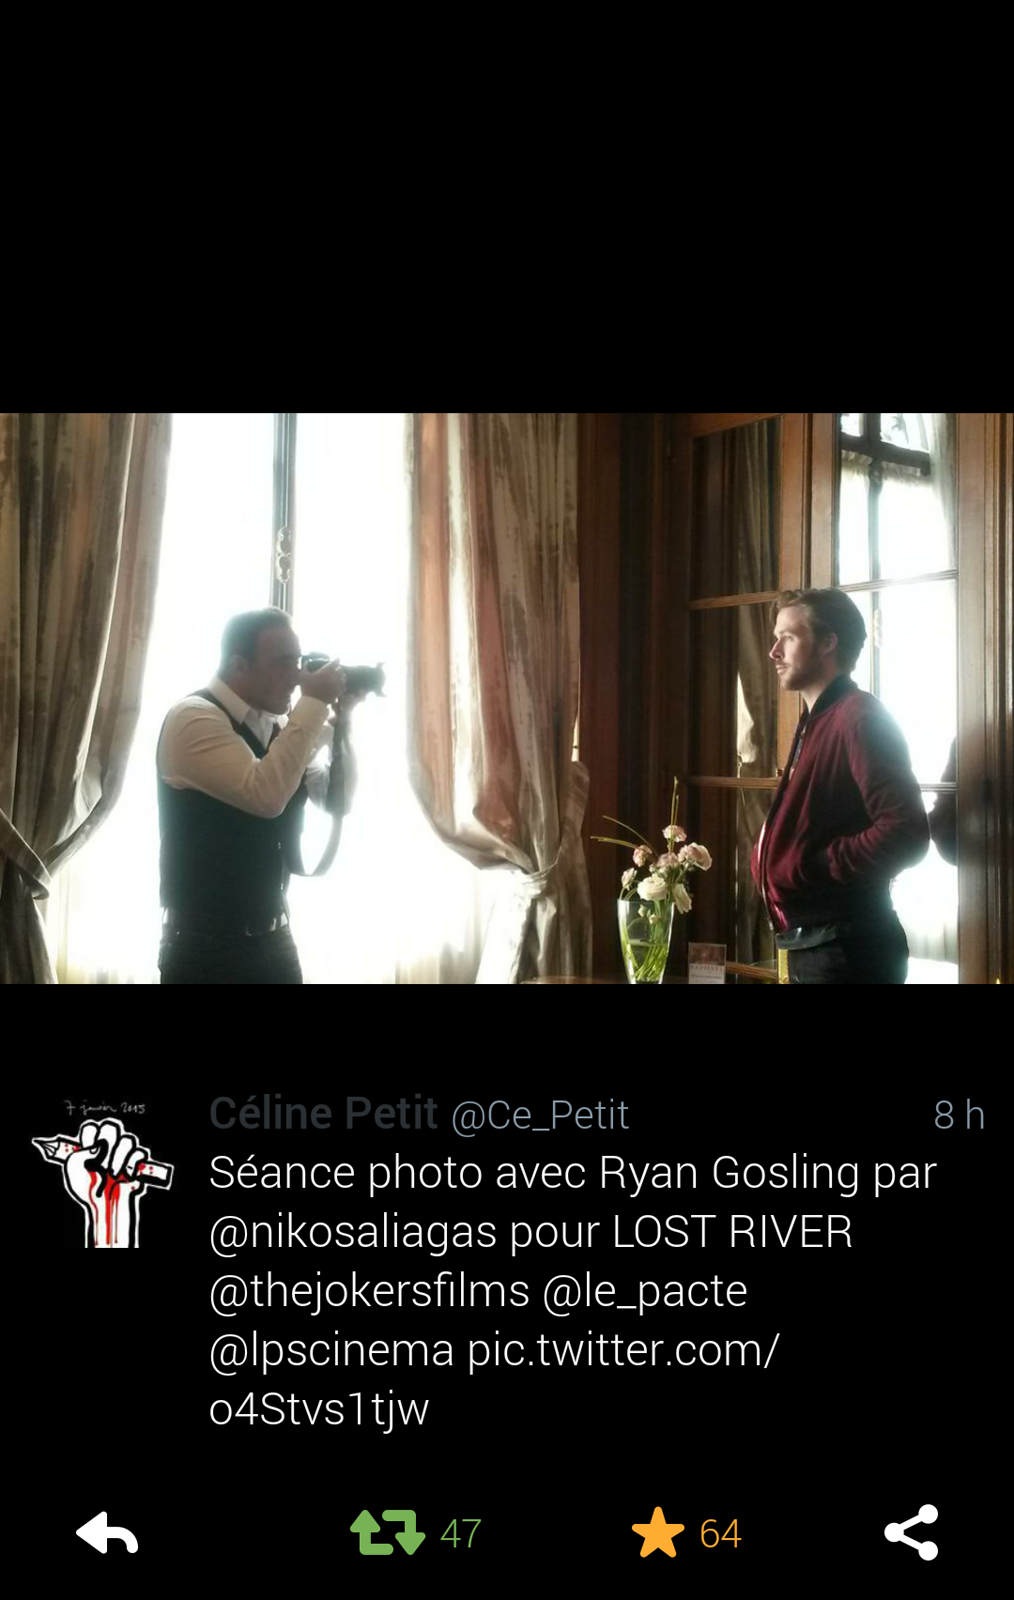 Séance photo Ryan Gosling par Nikos Aliagas pour Lost River premier film promo France Europe 1 photo twiter by Céline Petit